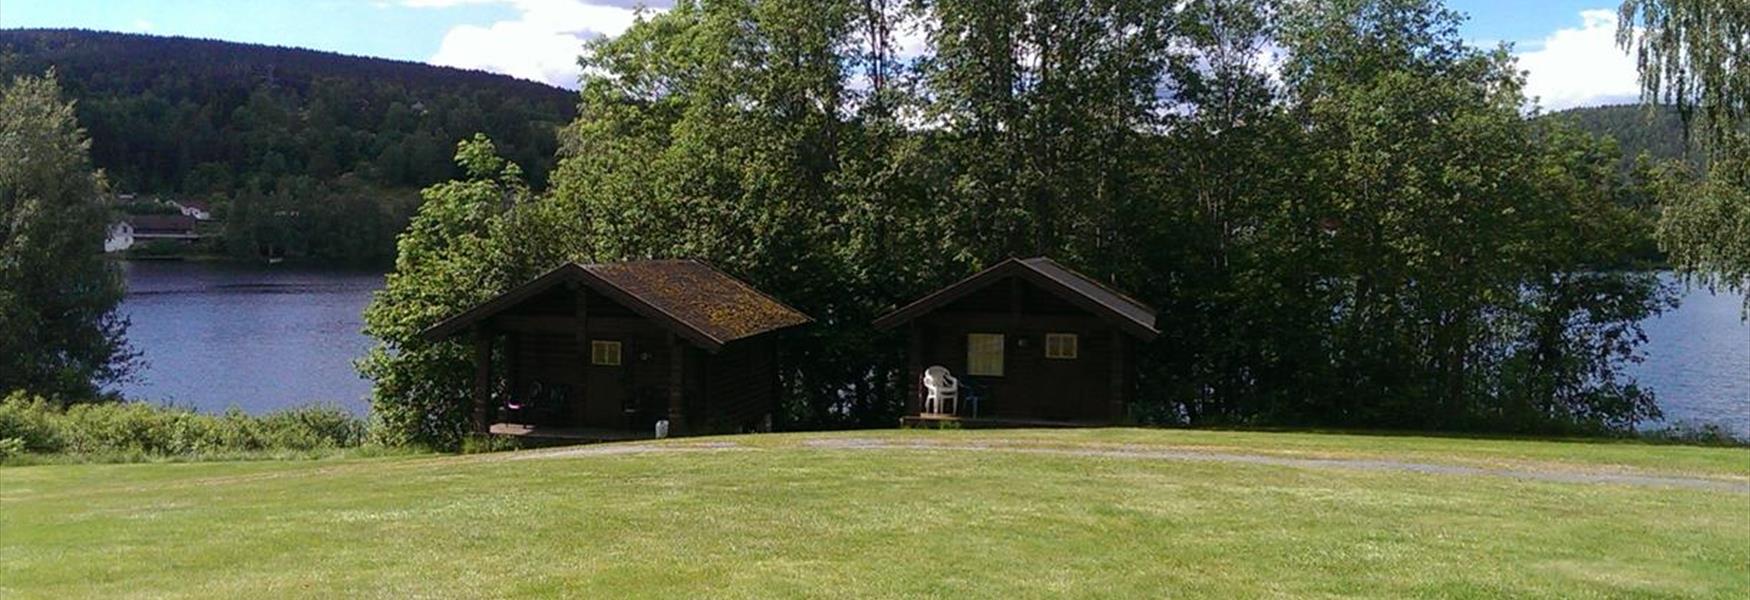 hytter ved Norsjø på Gåsodden Camping